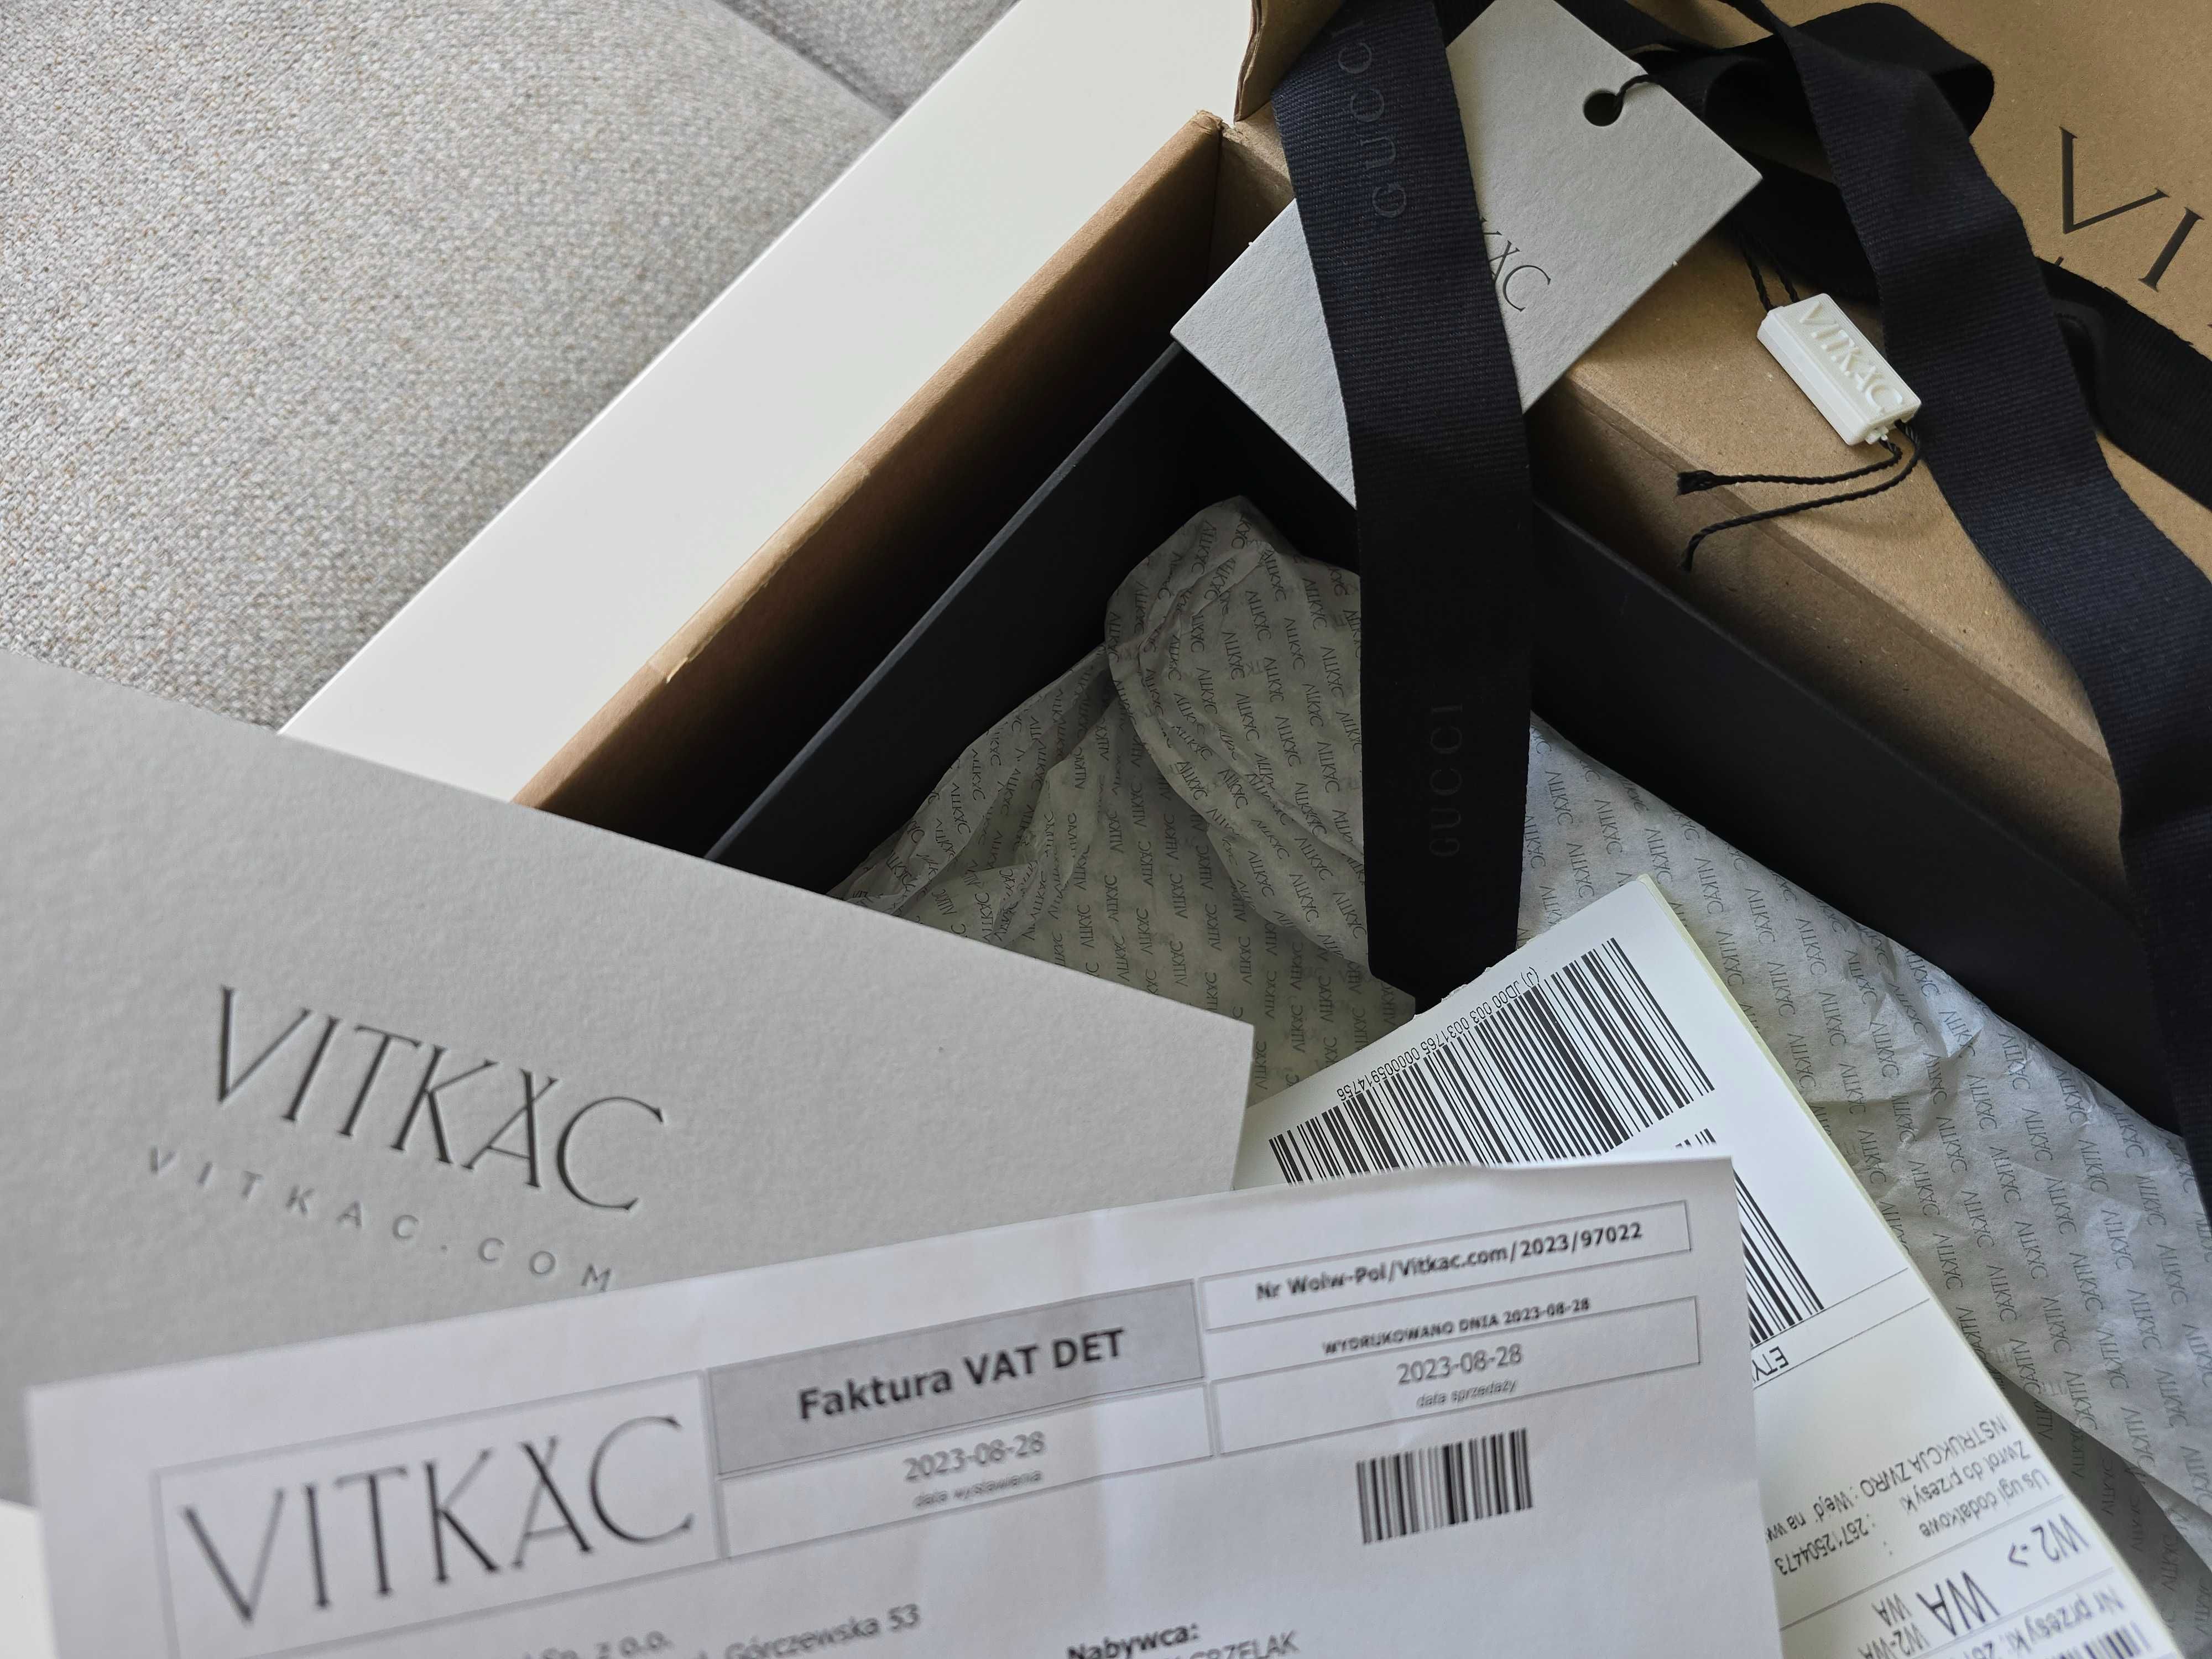 Gucci  torebka nerka kupiona w Vitkacu